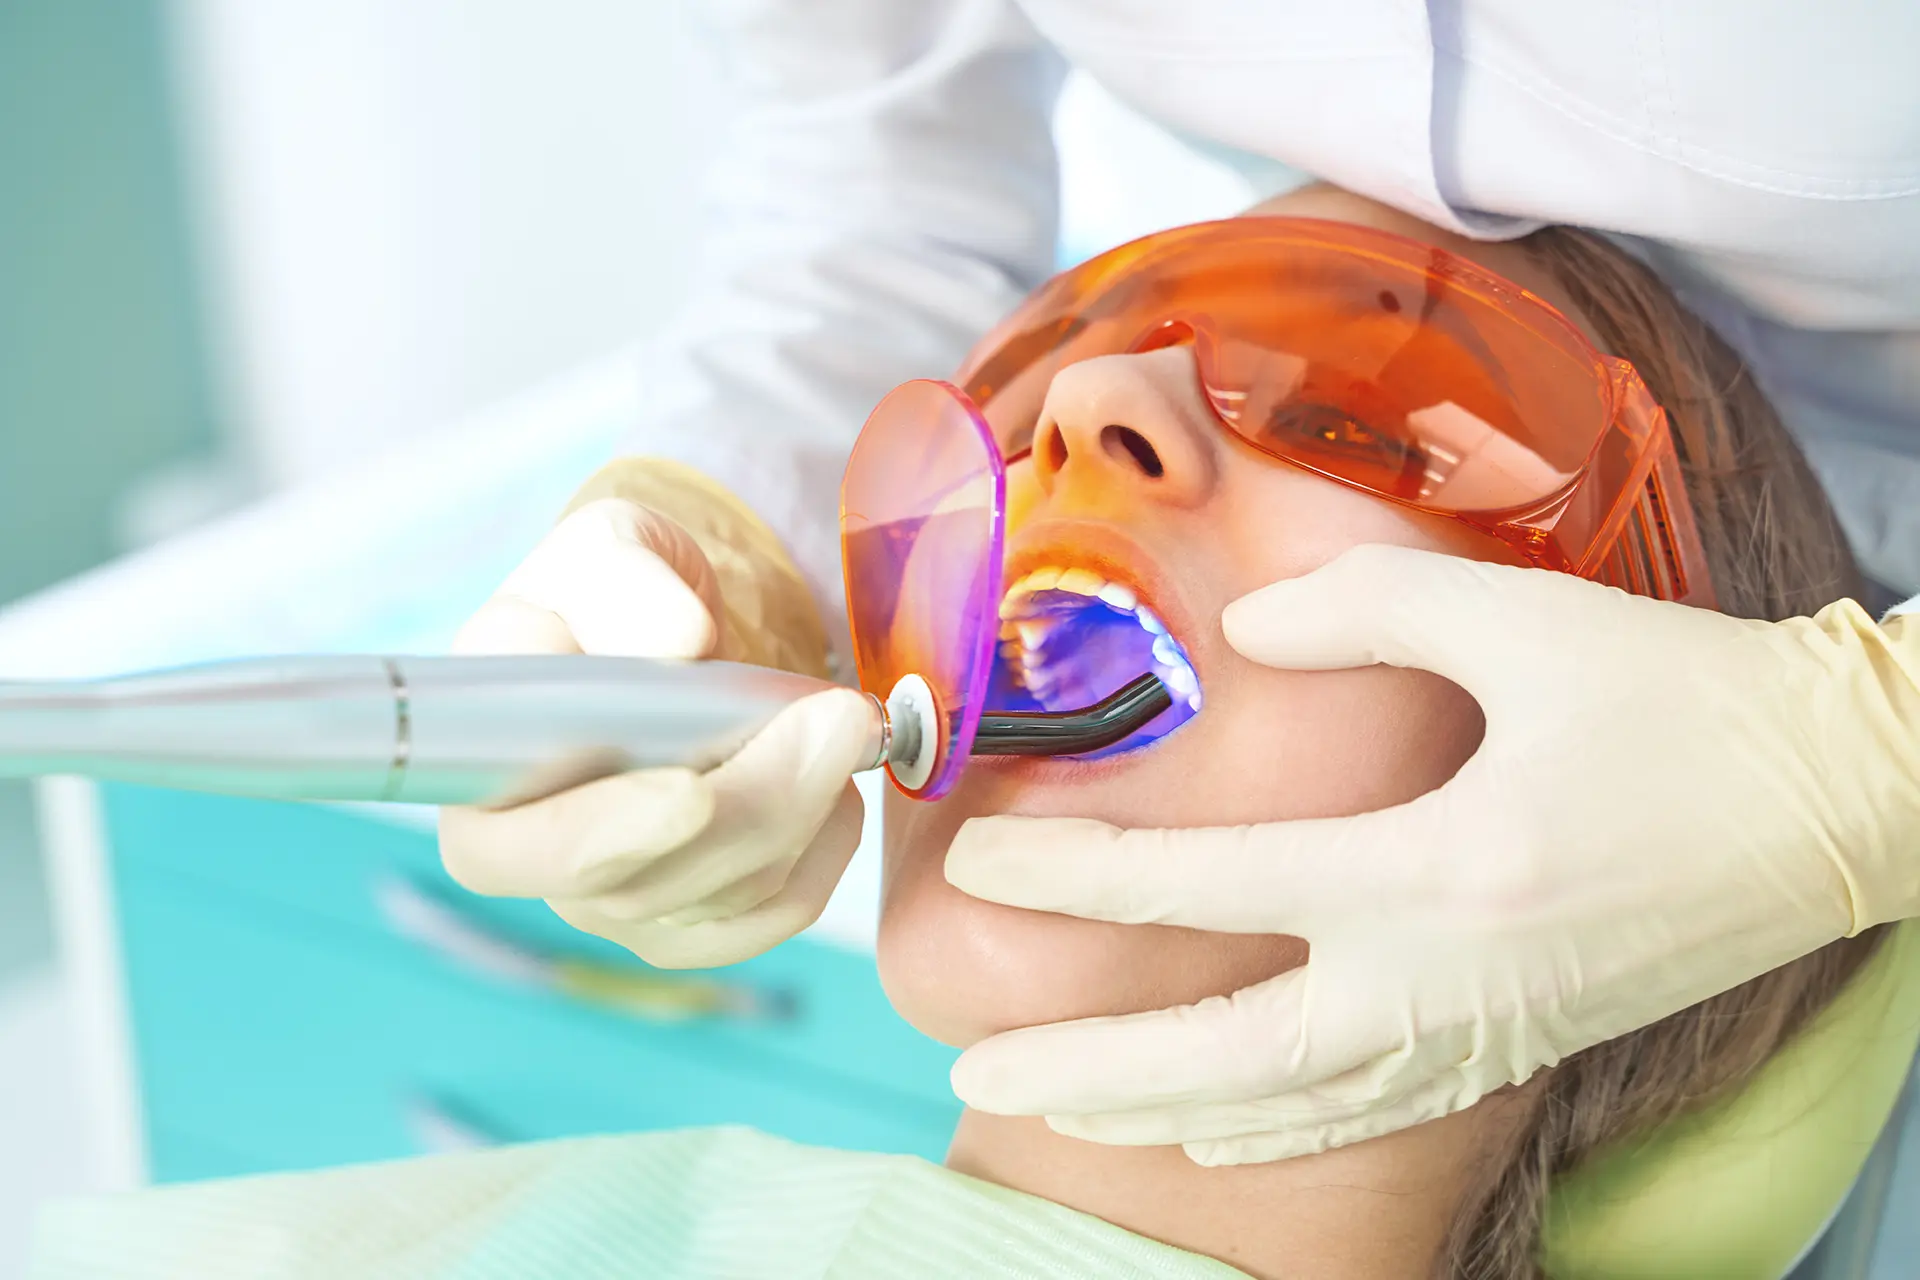 Kompositzahnfüllung wird durch den Zahnarzt mittels Polymerisationslampe ausgehärtet (Symbolbild für Ästhetische Zahnerhaltung im Seitenzahnbereich)